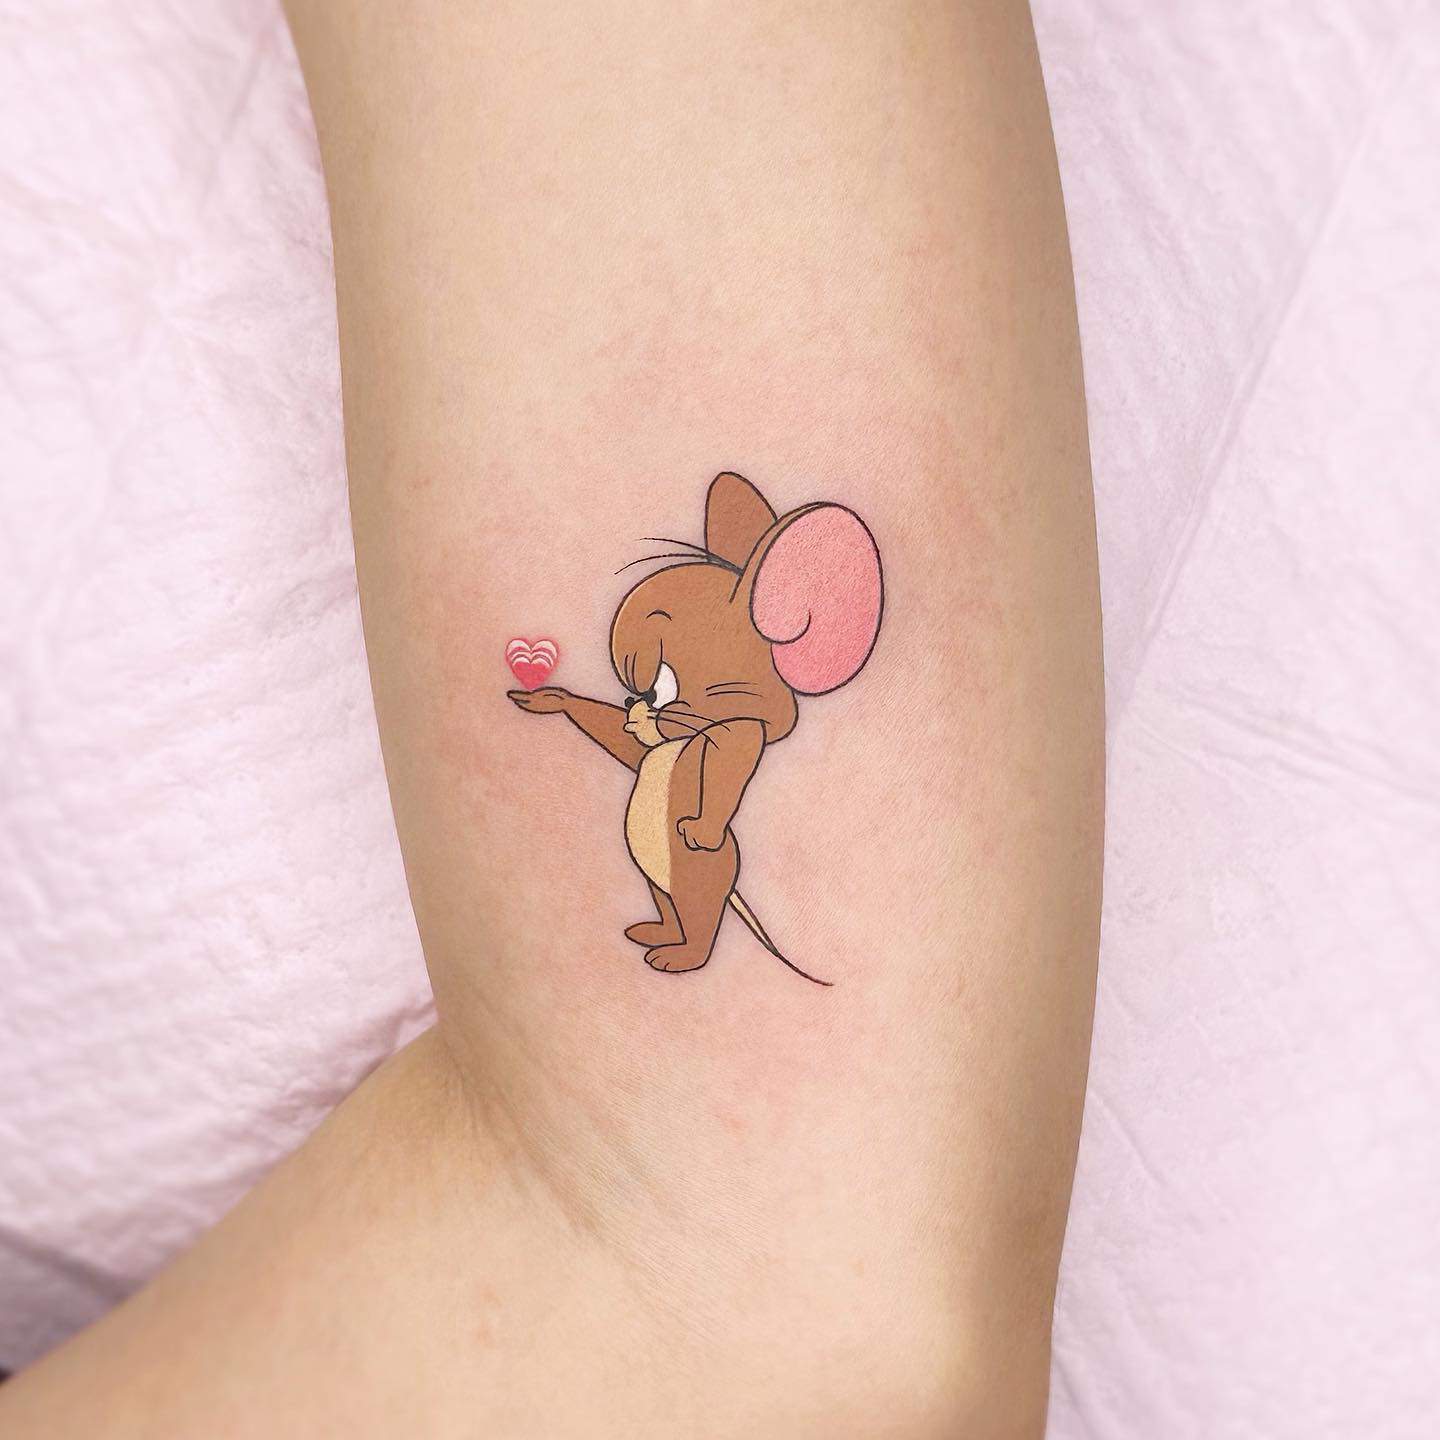 Jerry tattoo by mind kkn